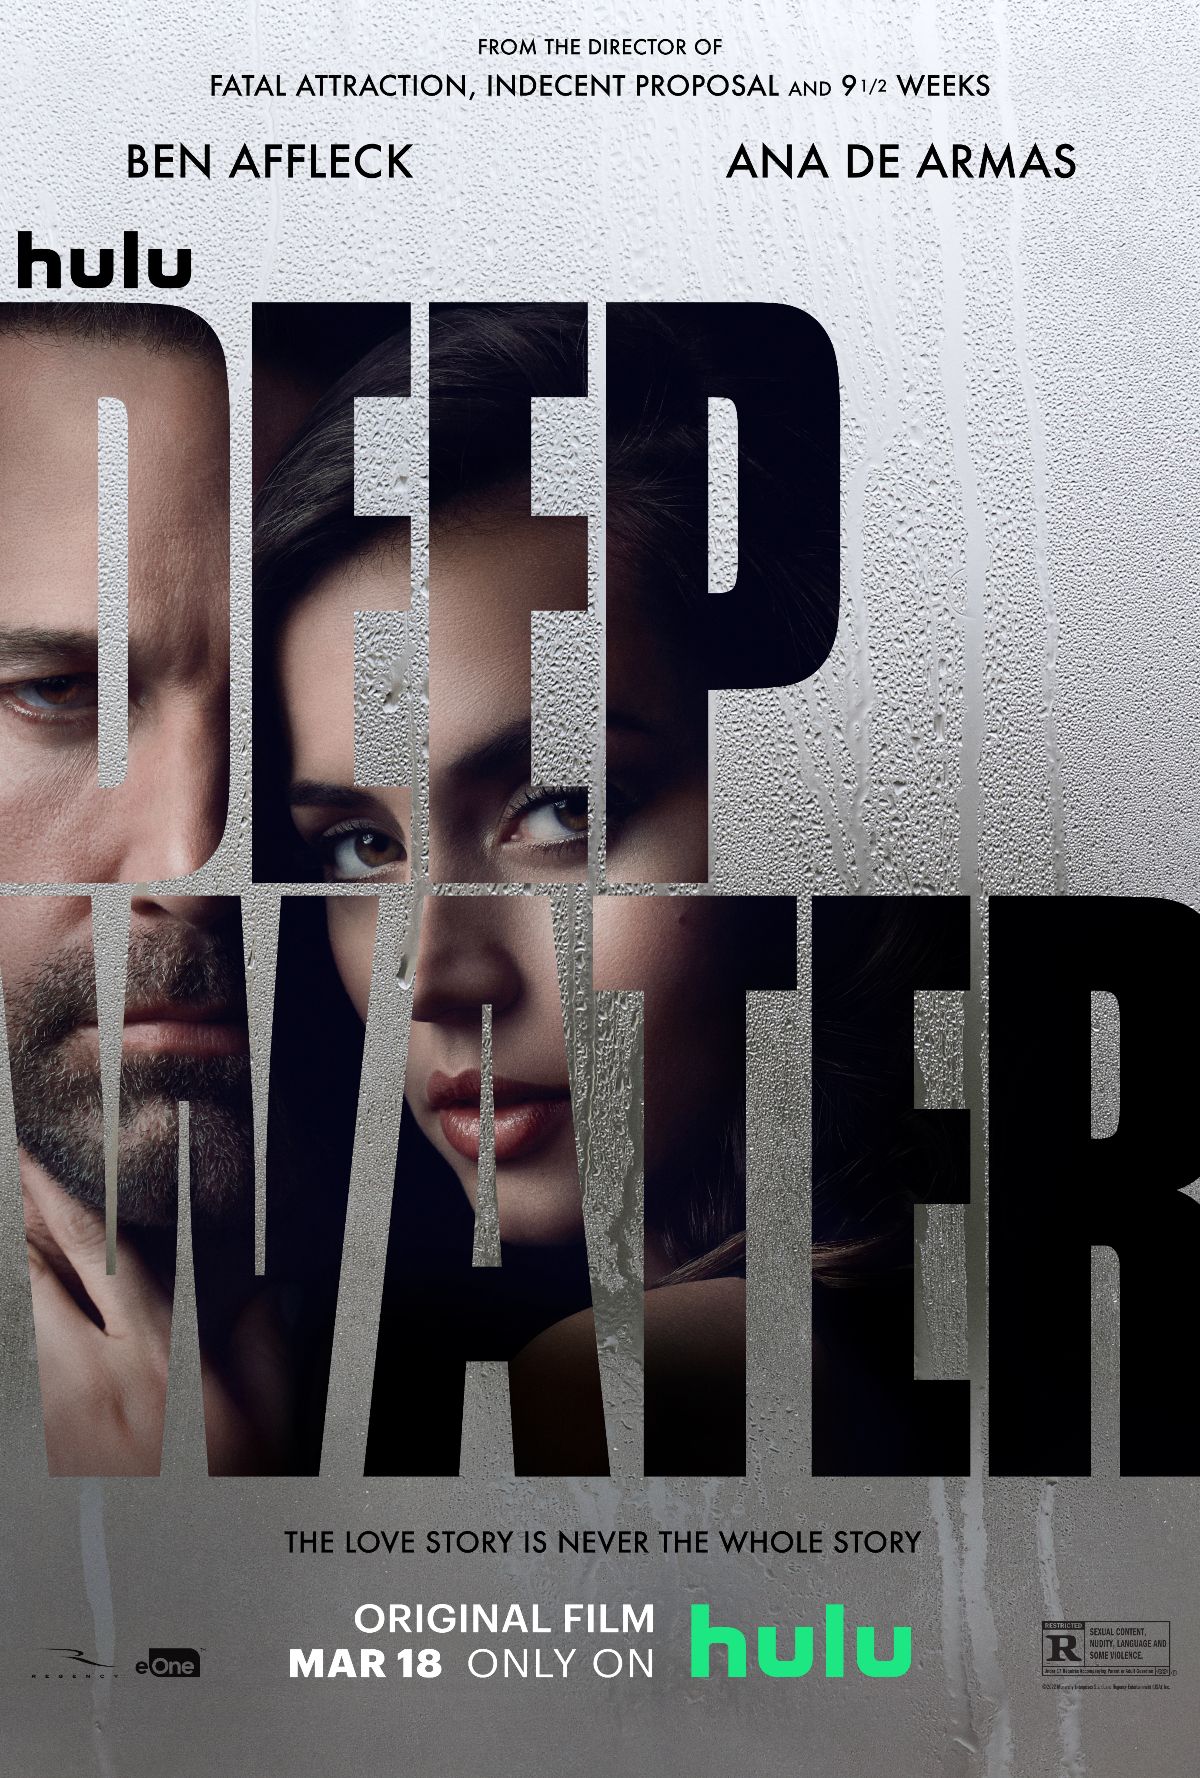 deep water hulu movie review